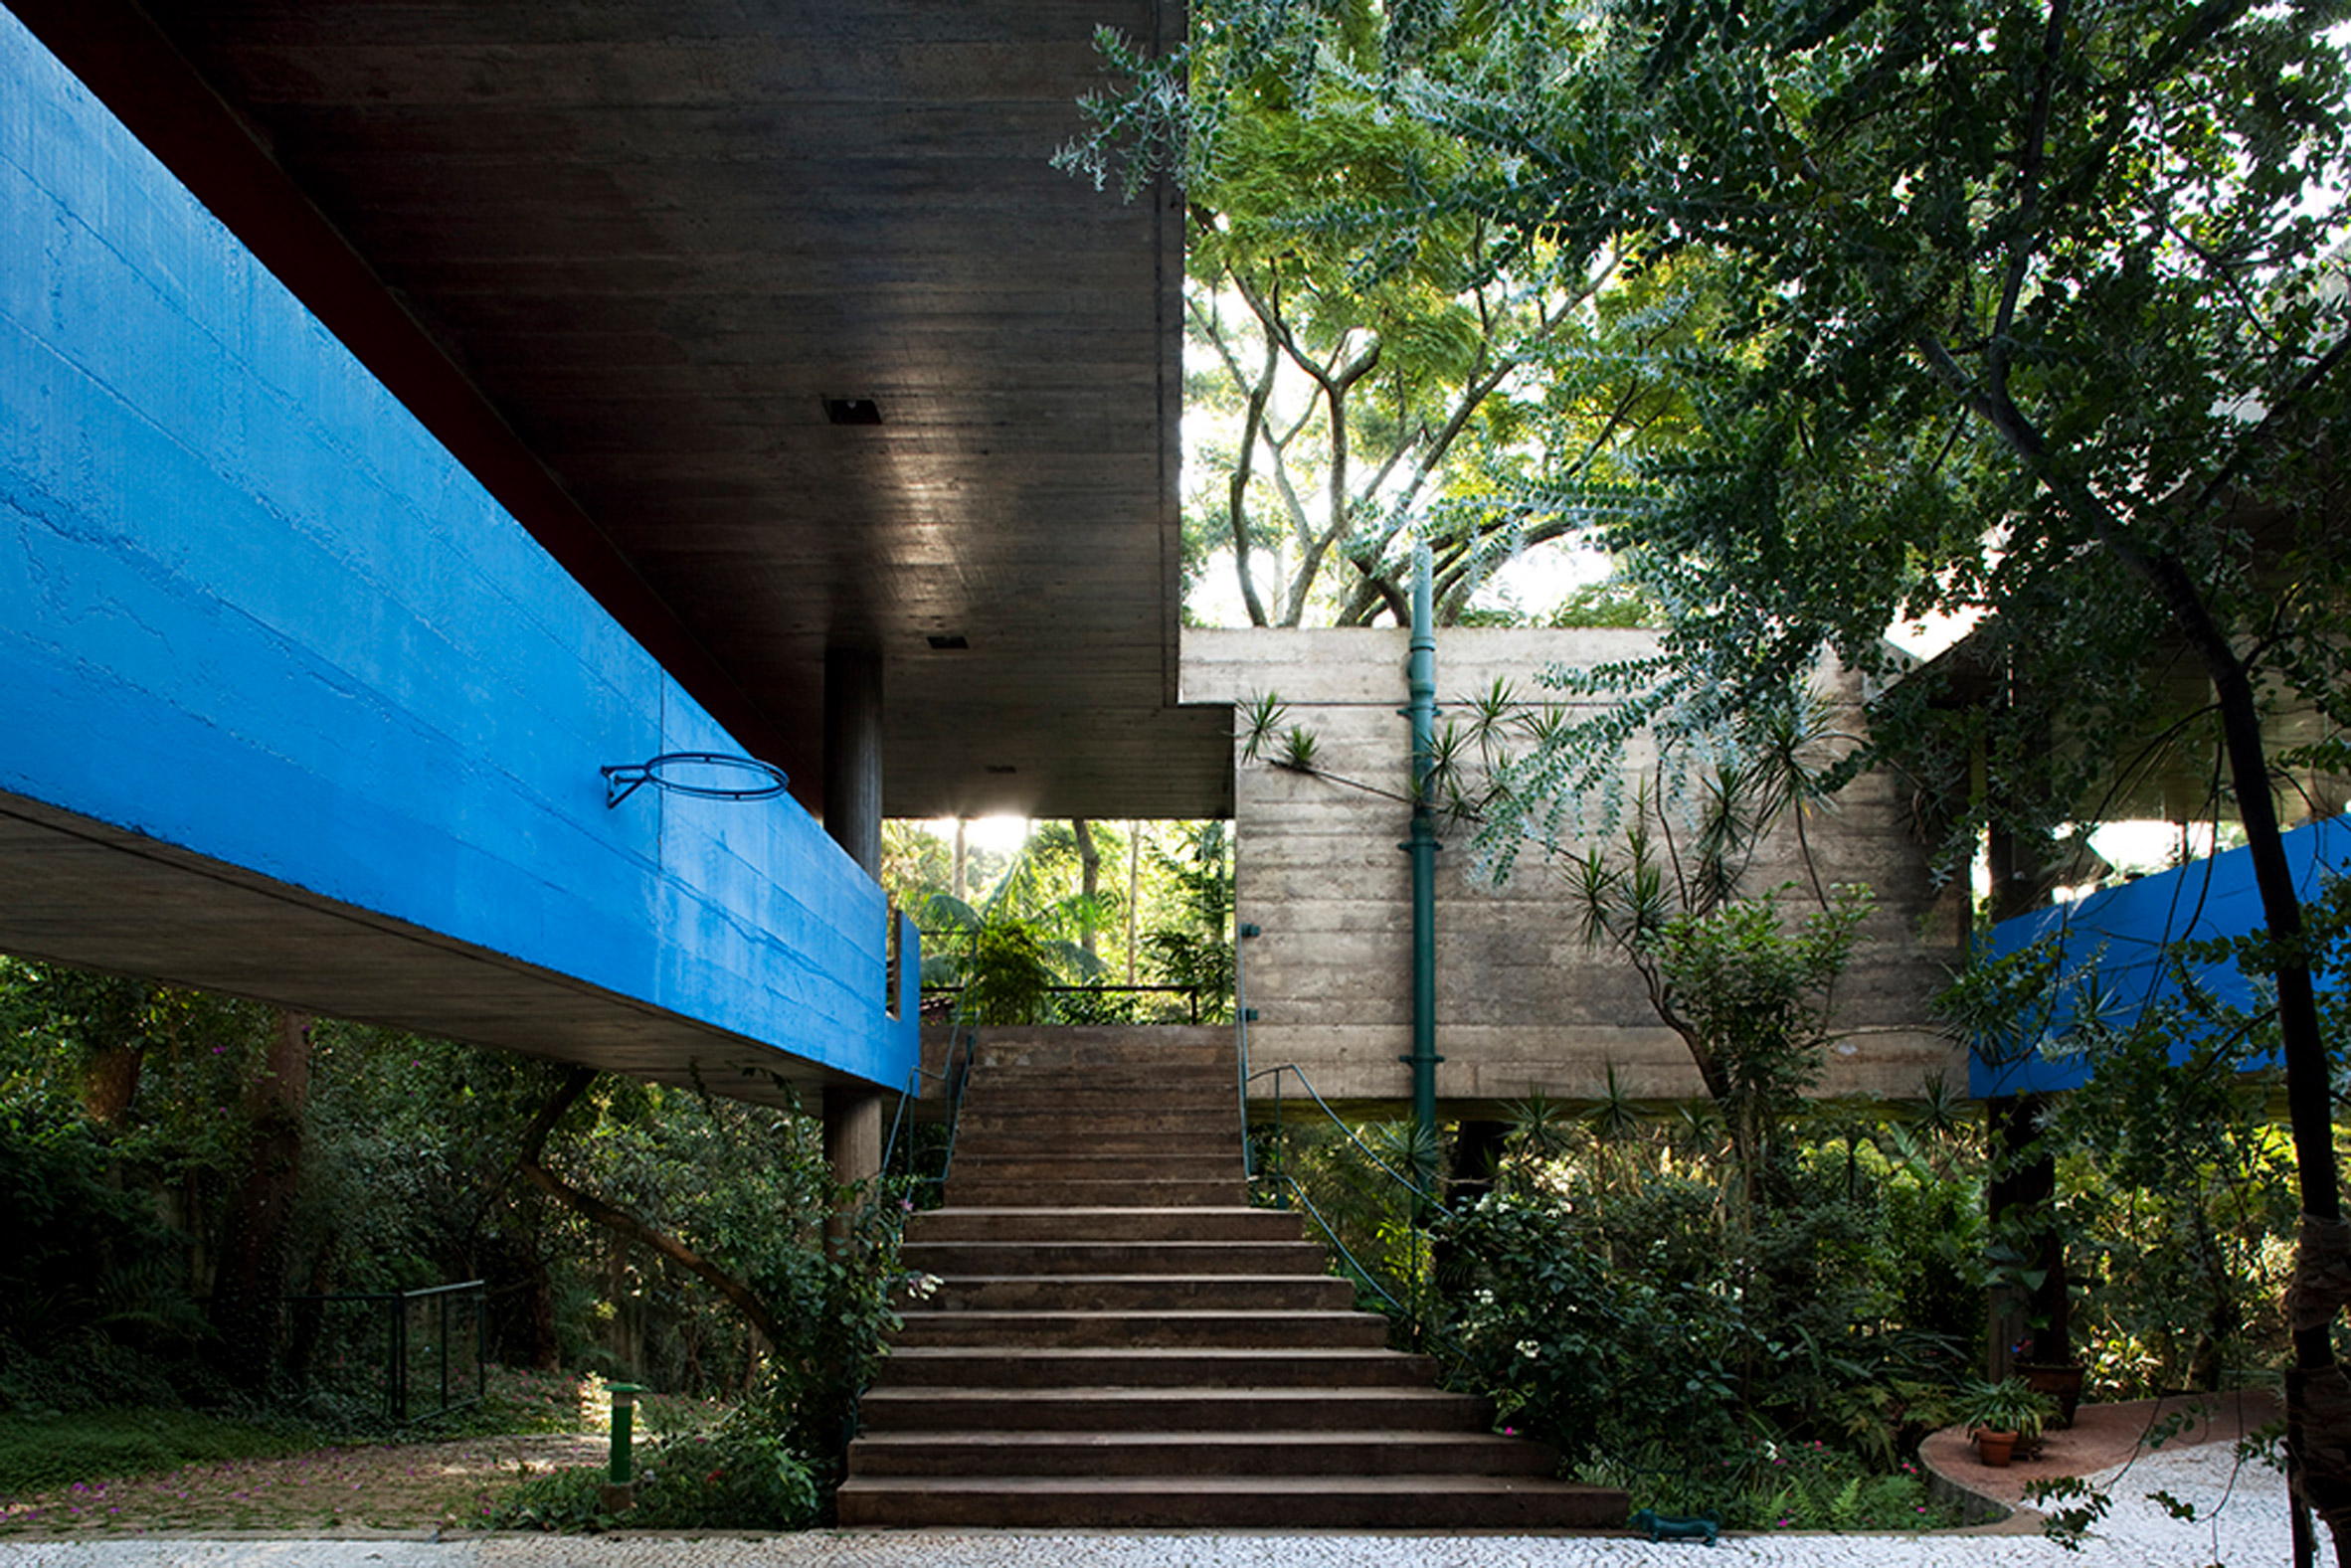 Concrete slabs defined Paulo Mendes da Rocha's work